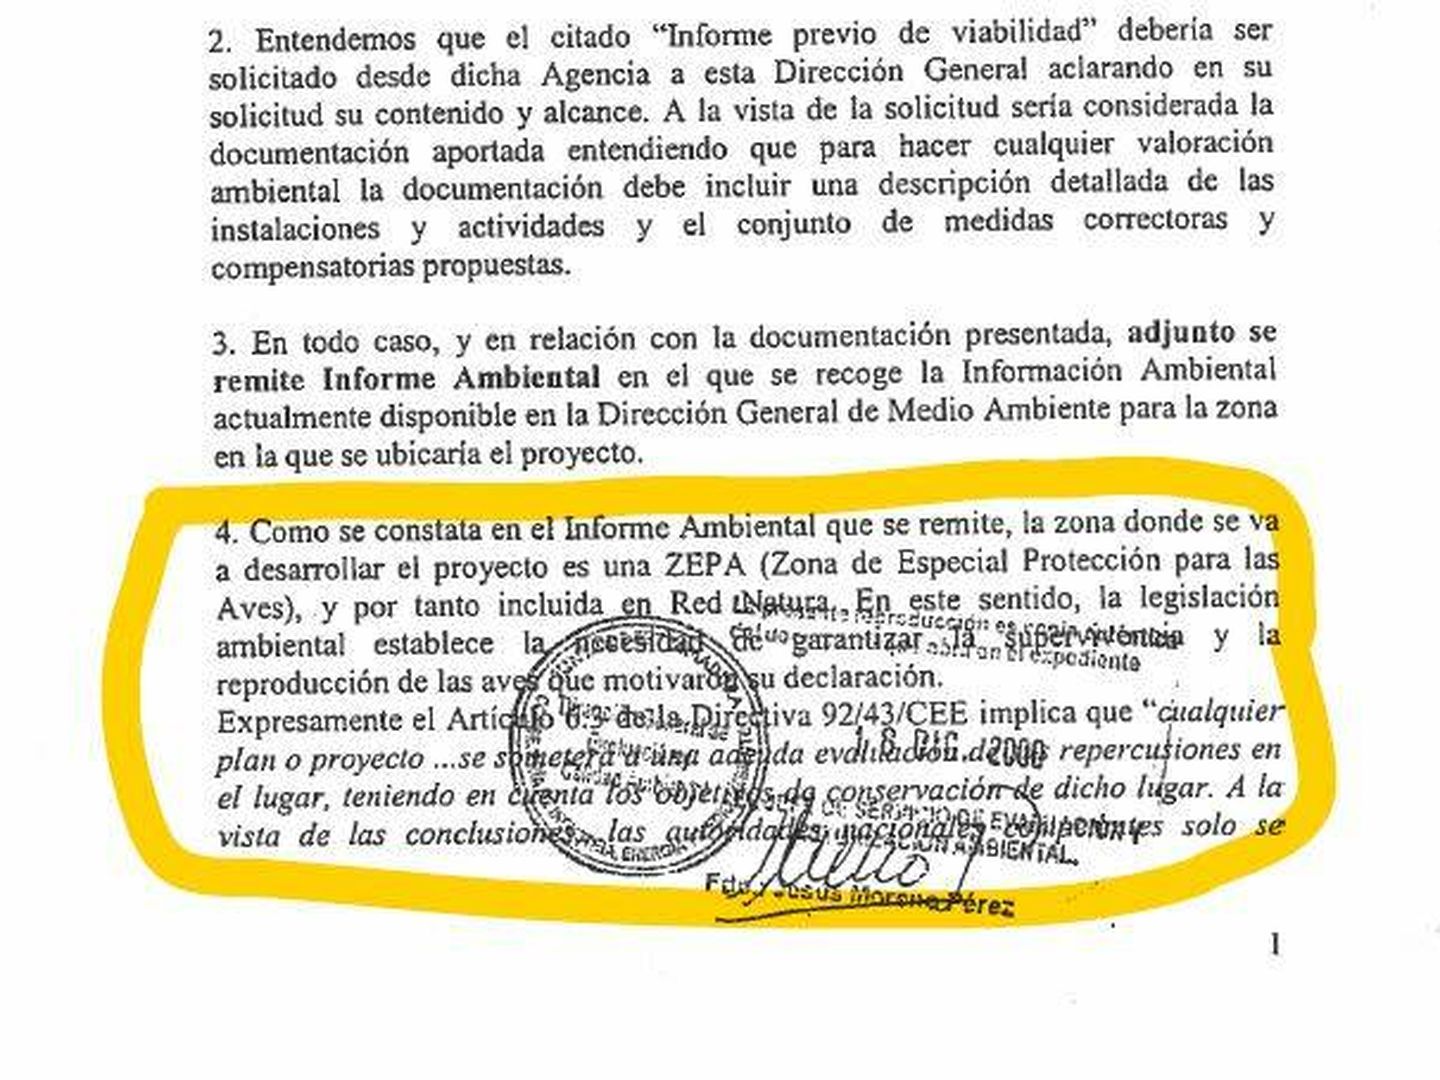 Documento de 2005 en el que la Junta reconoce la existencia de la ZEPA en Valdecañas.